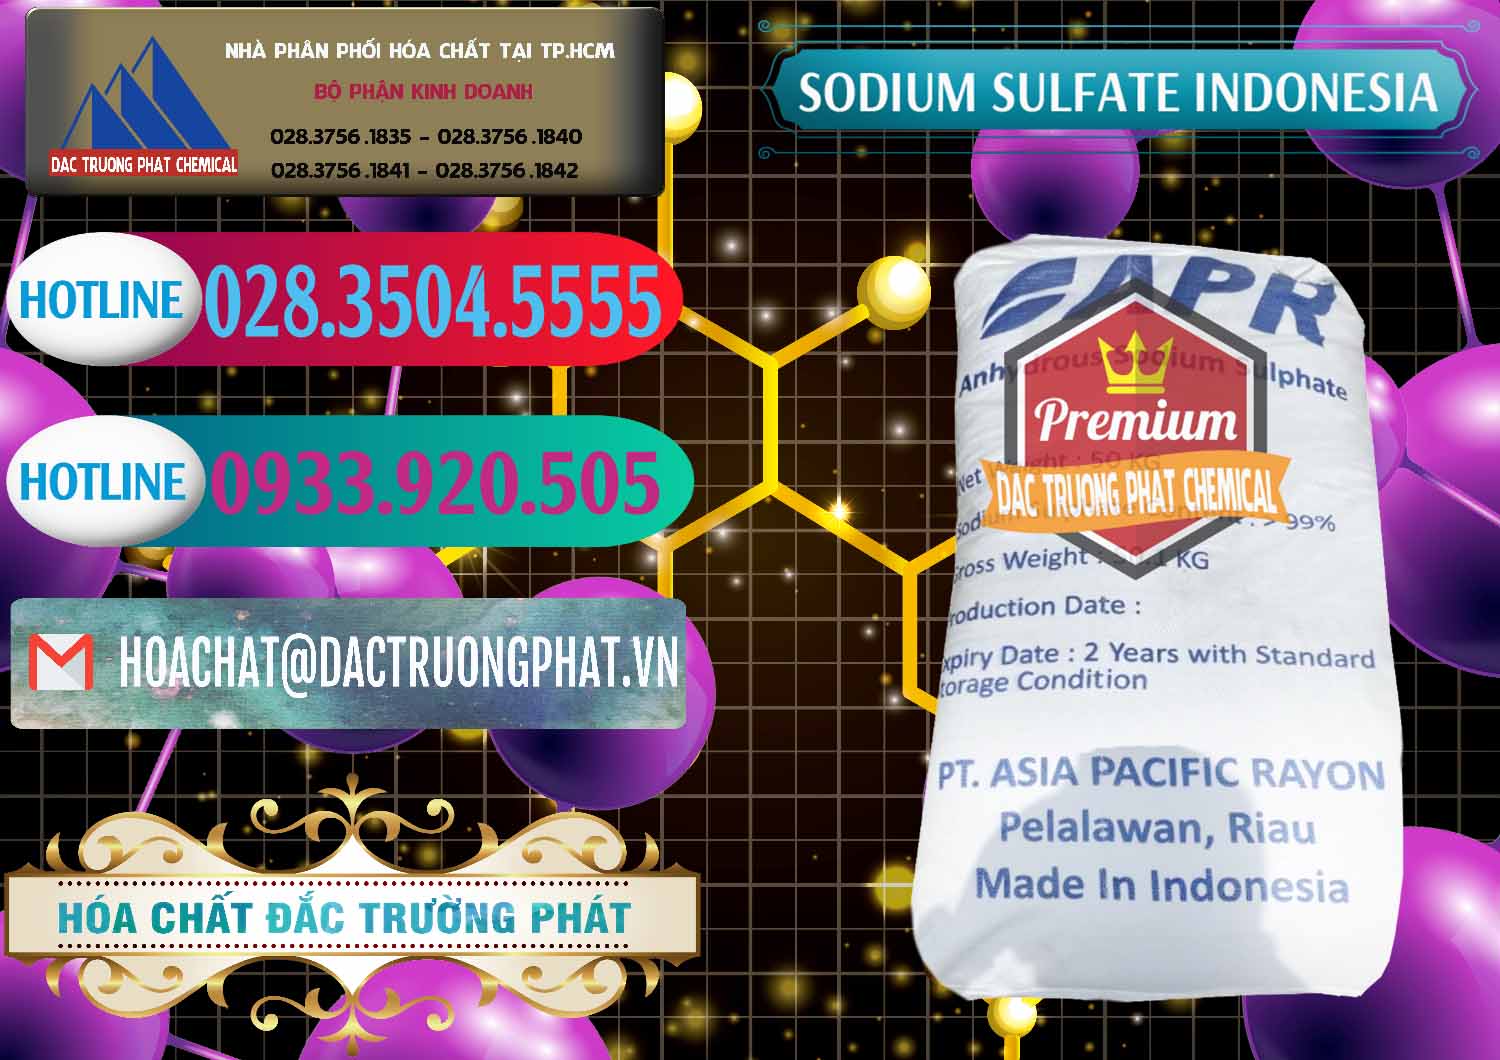 Cty bán - phân phối Sodium Sulphate - Muối Sunfat Na2SO4 APR Indonesia - 0460 - Đơn vị chuyên phân phối ( bán ) hóa chất tại TP.HCM - truongphat.vn